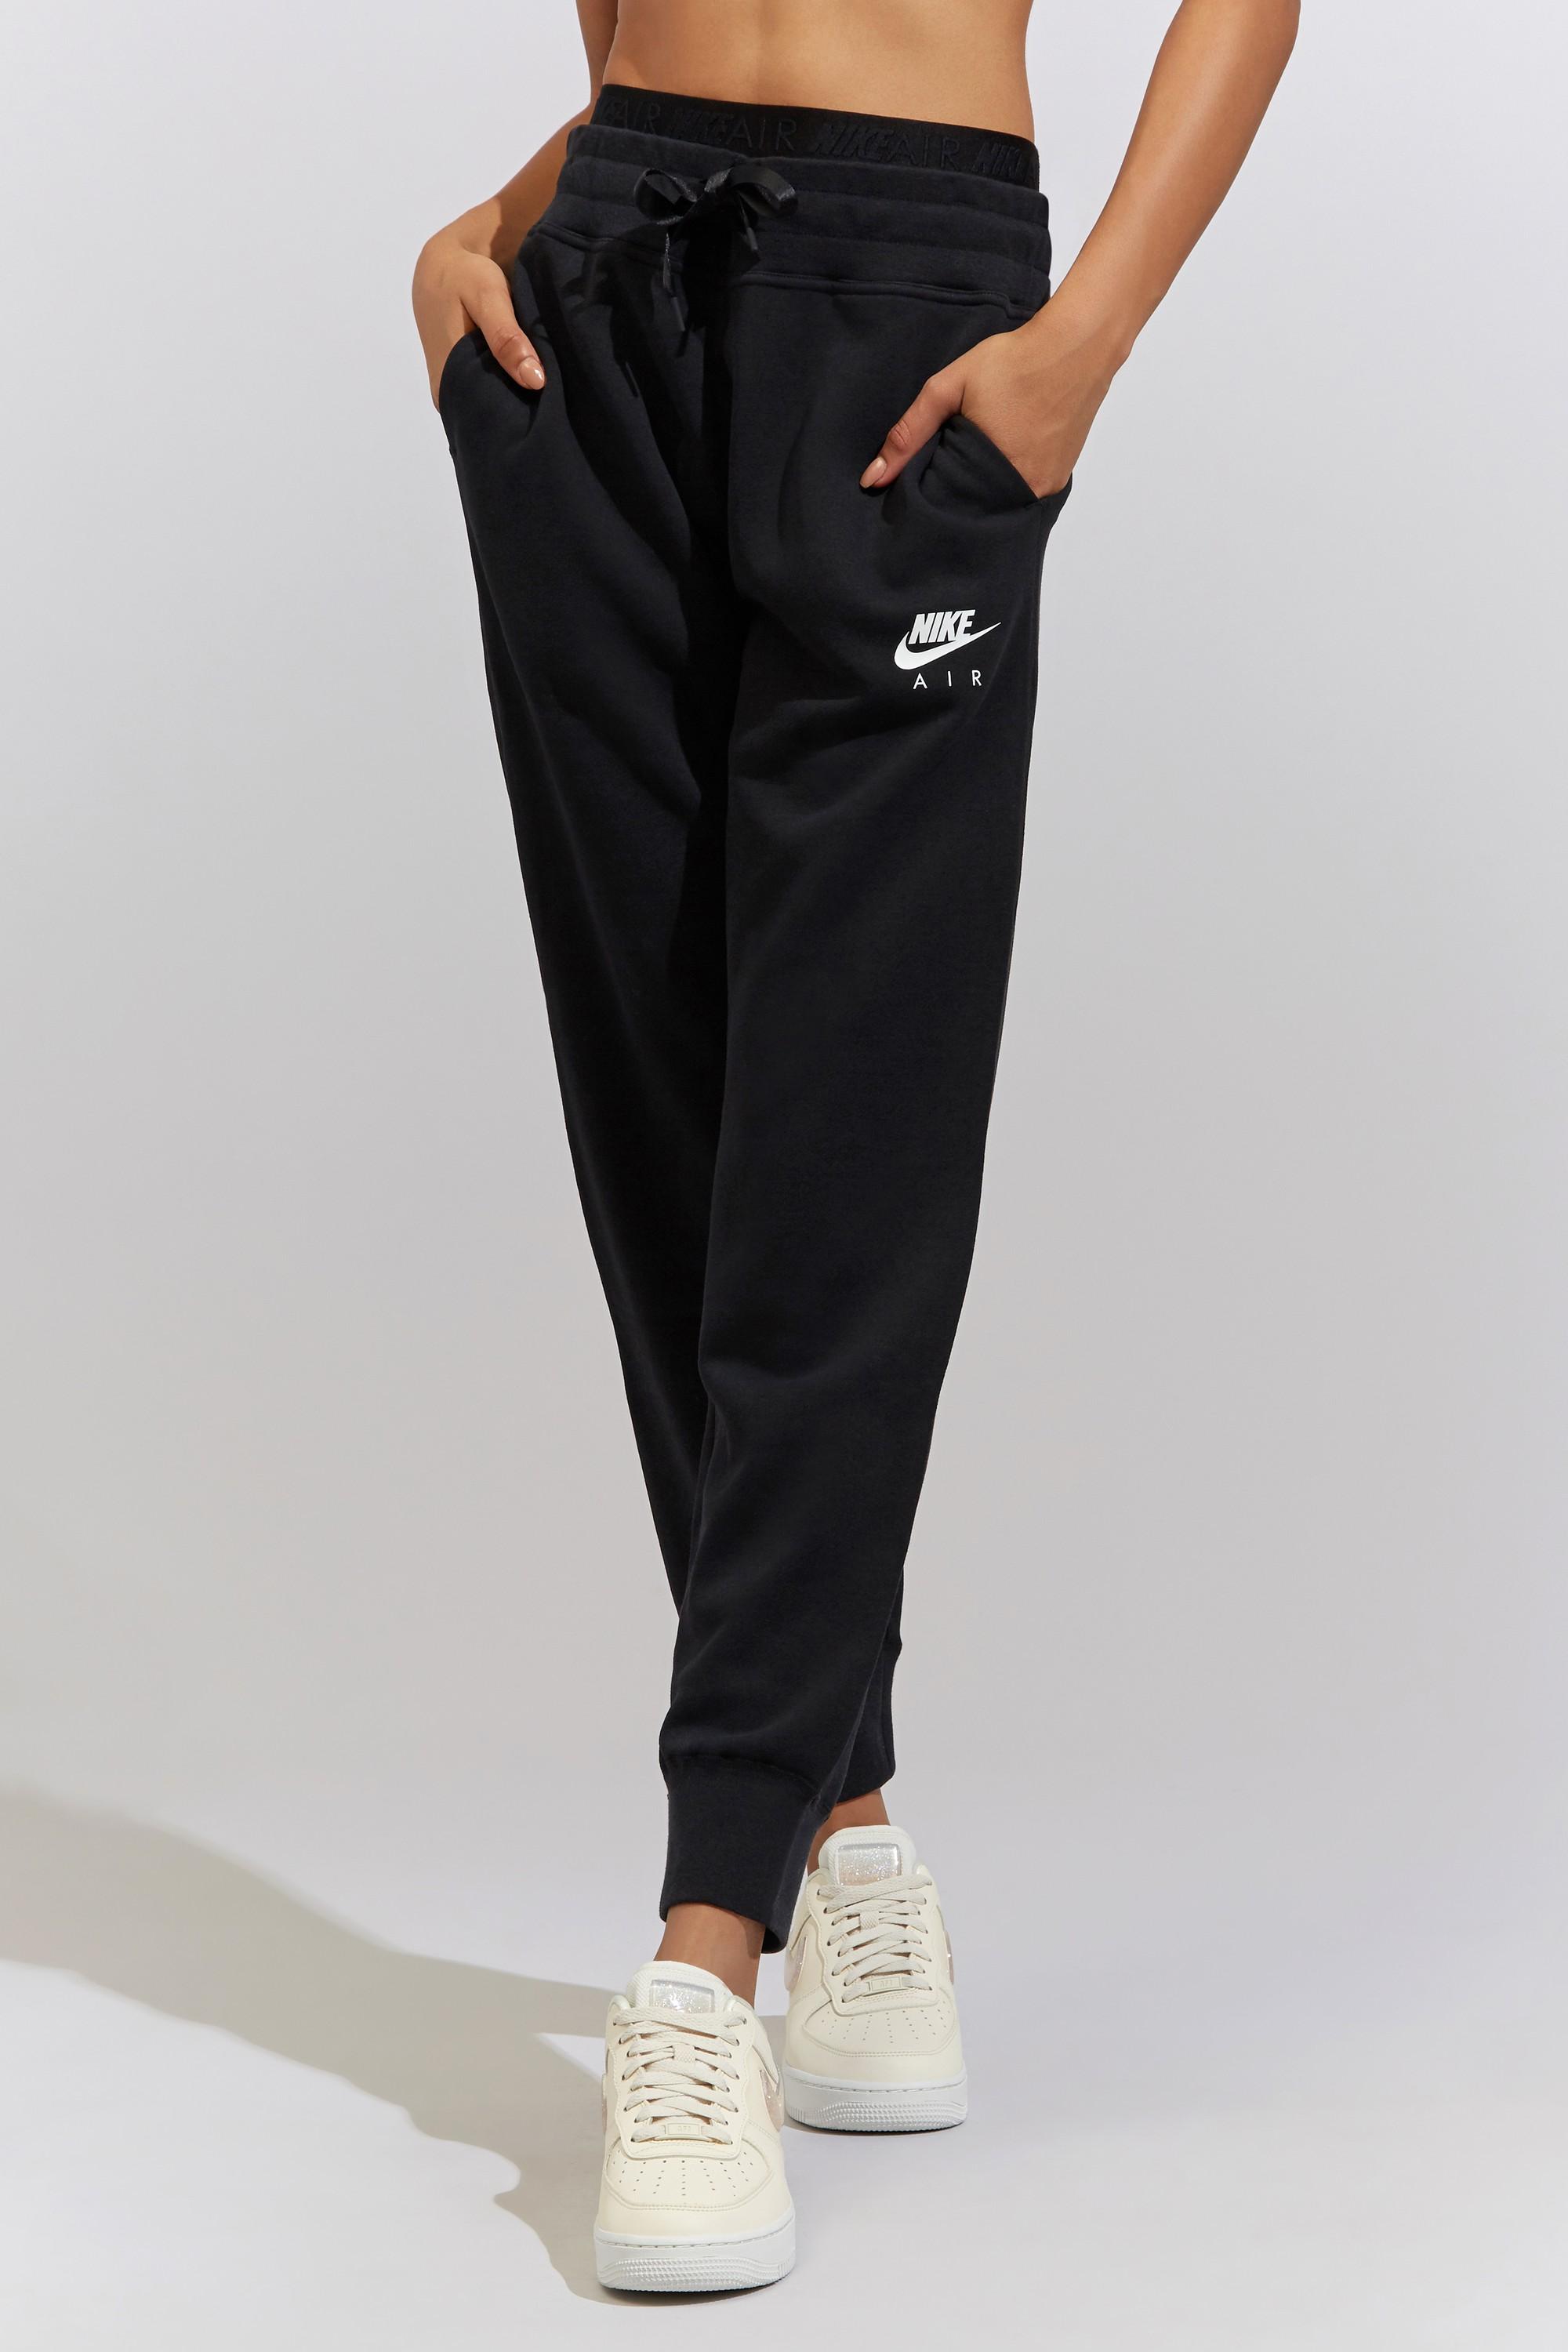 Nike Air Fleece Pants in Black/White (Black) - Lyst